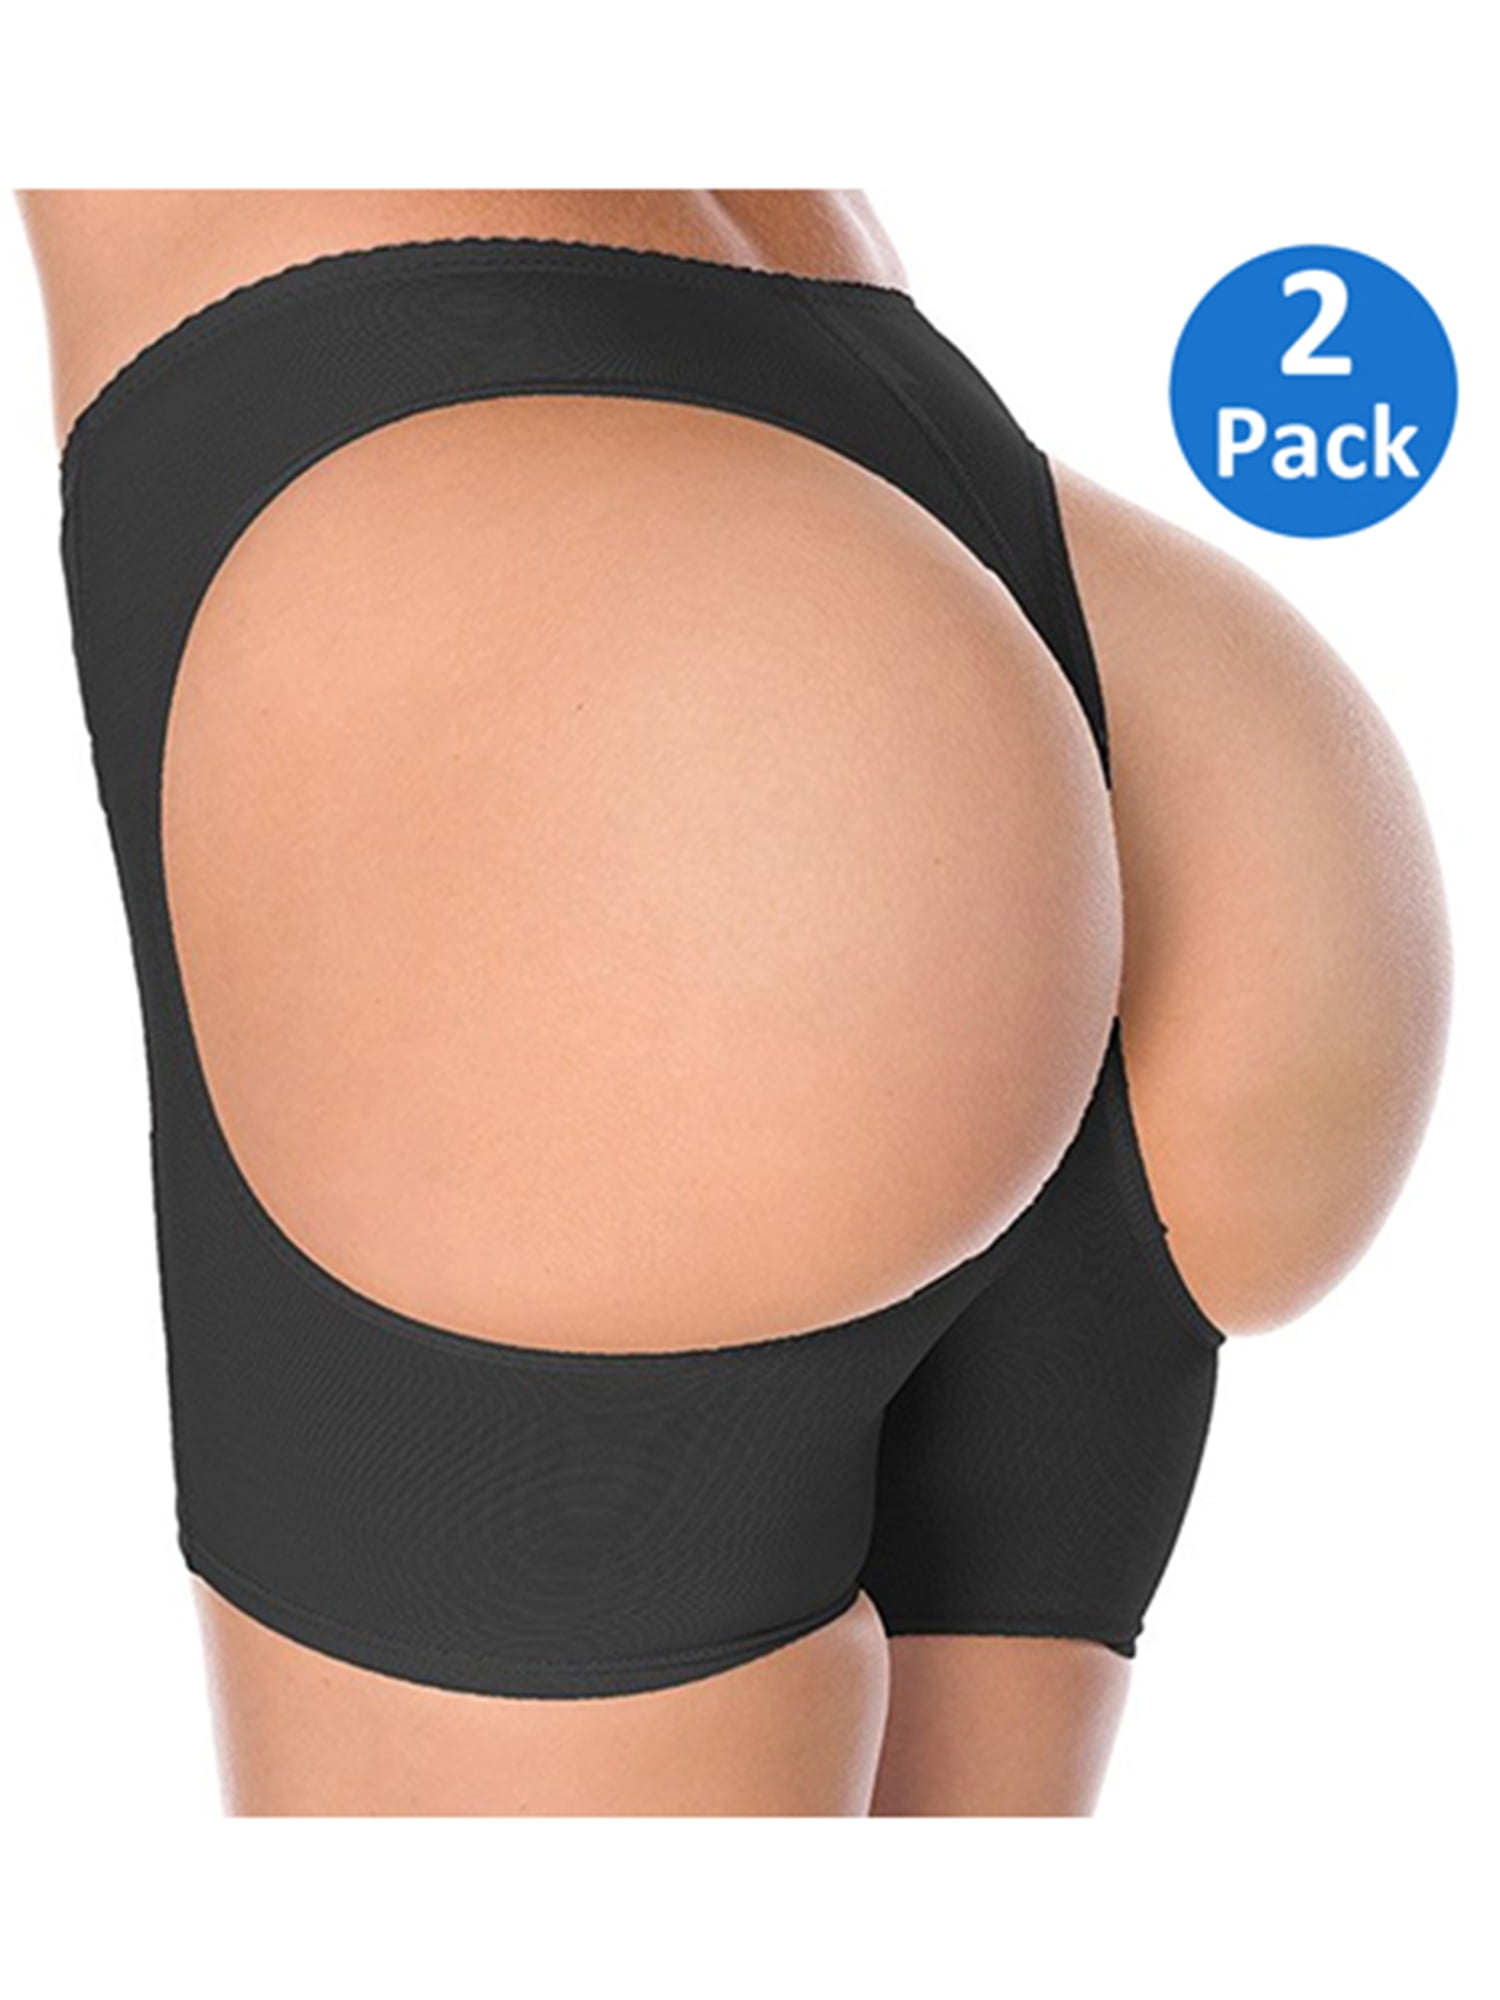 SAYFUT Women's Sexy Seamless Butt Lifter Hip Enhancer Boyshorts